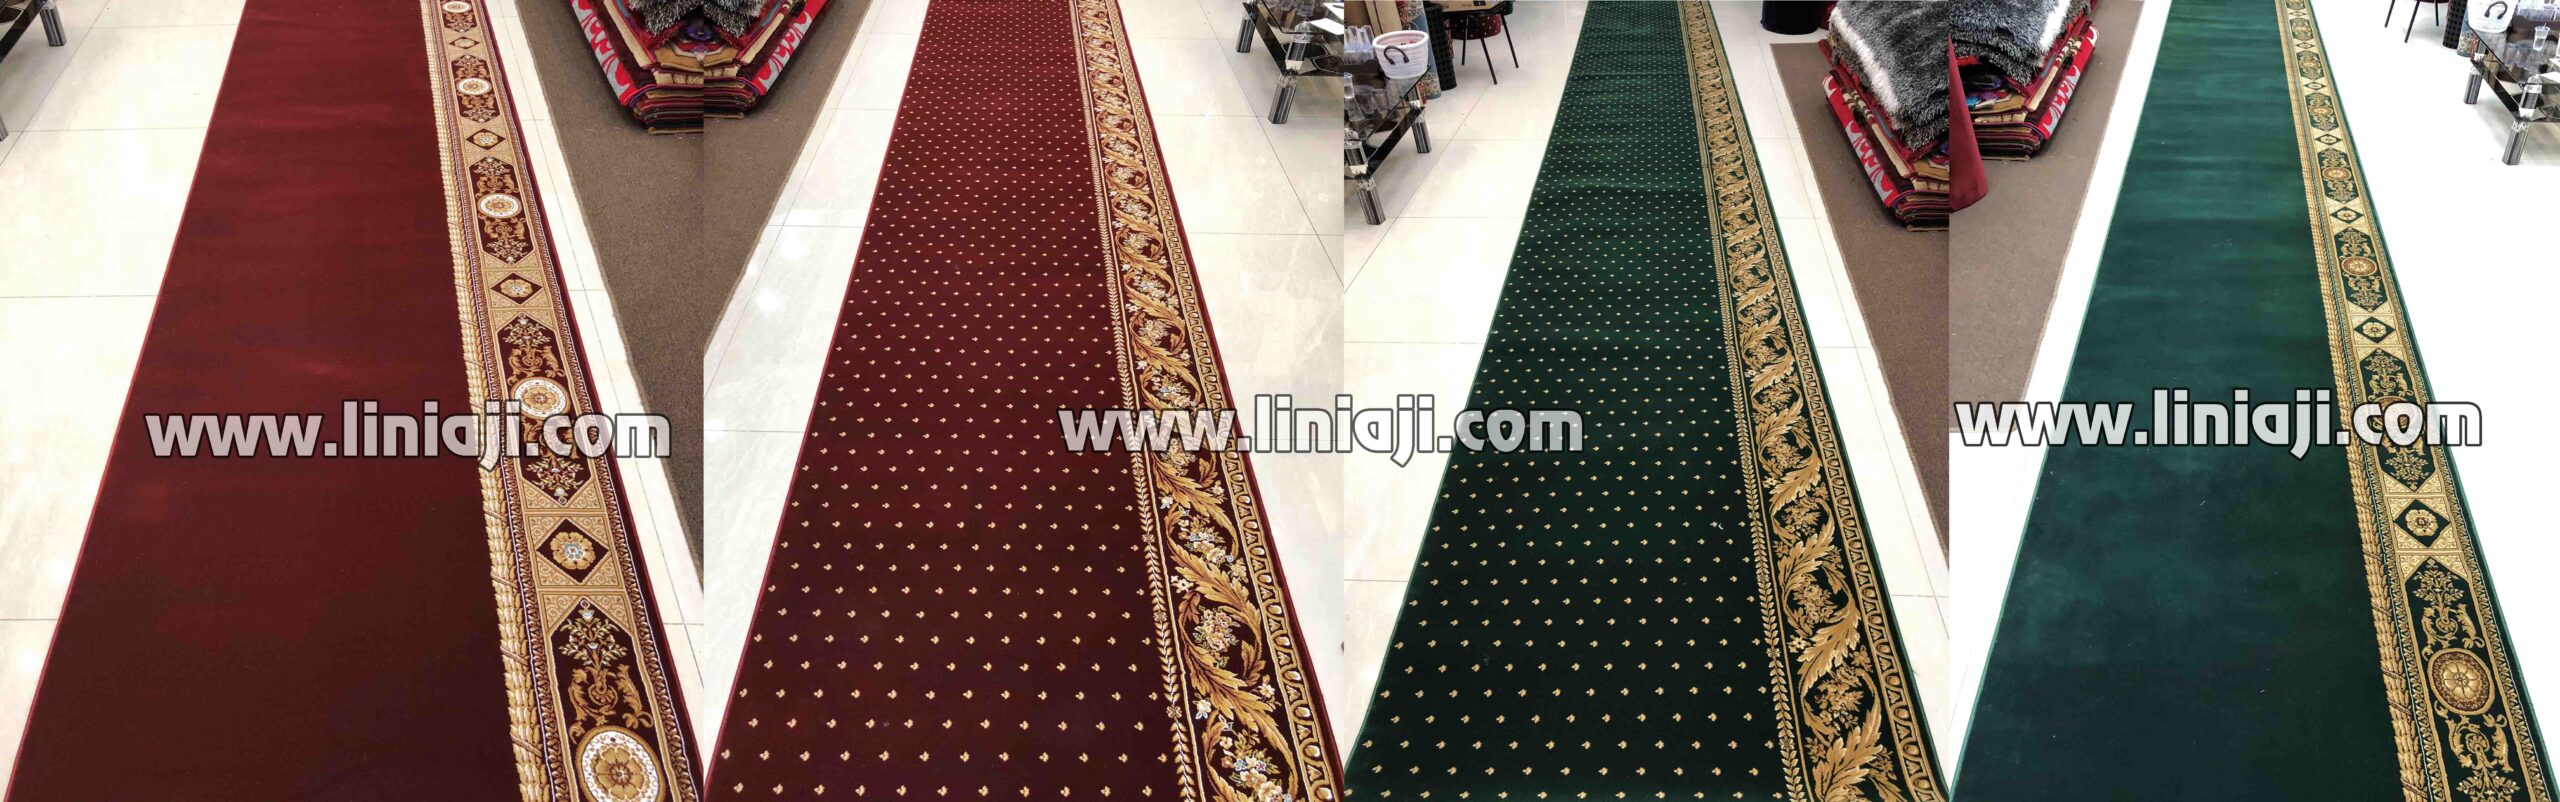 Tempat Jual Karpet Masjid Super Mosque